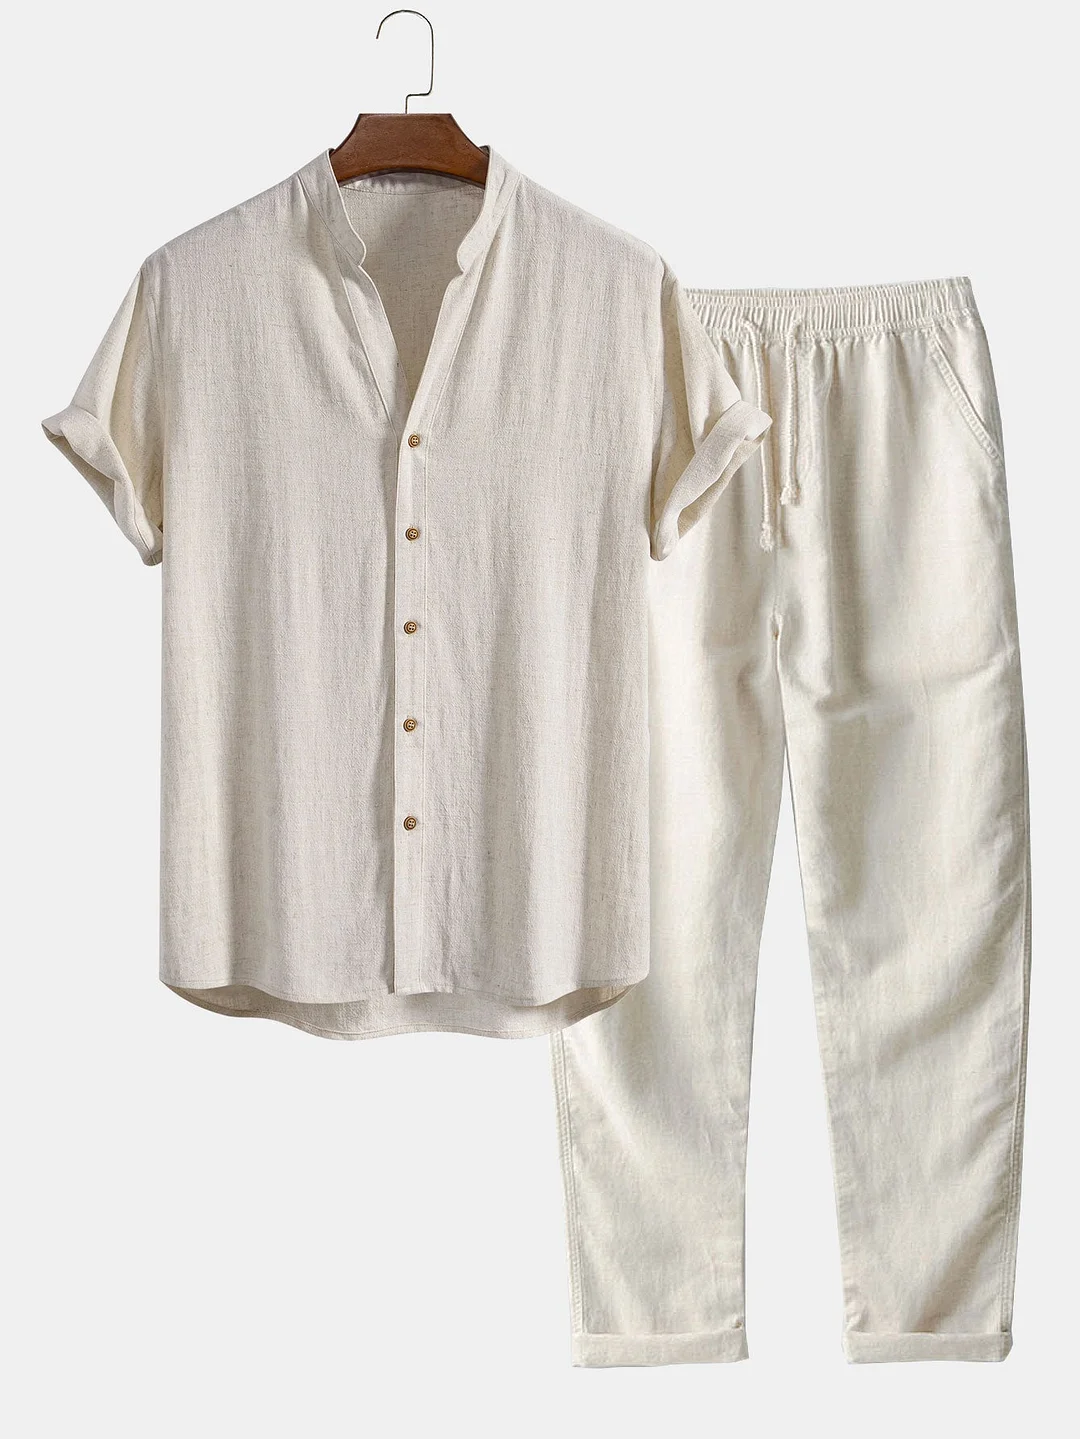 Short Sleeve Linen Rayon Blend Stand Collar Shirt & Straight Leg Linen Pants